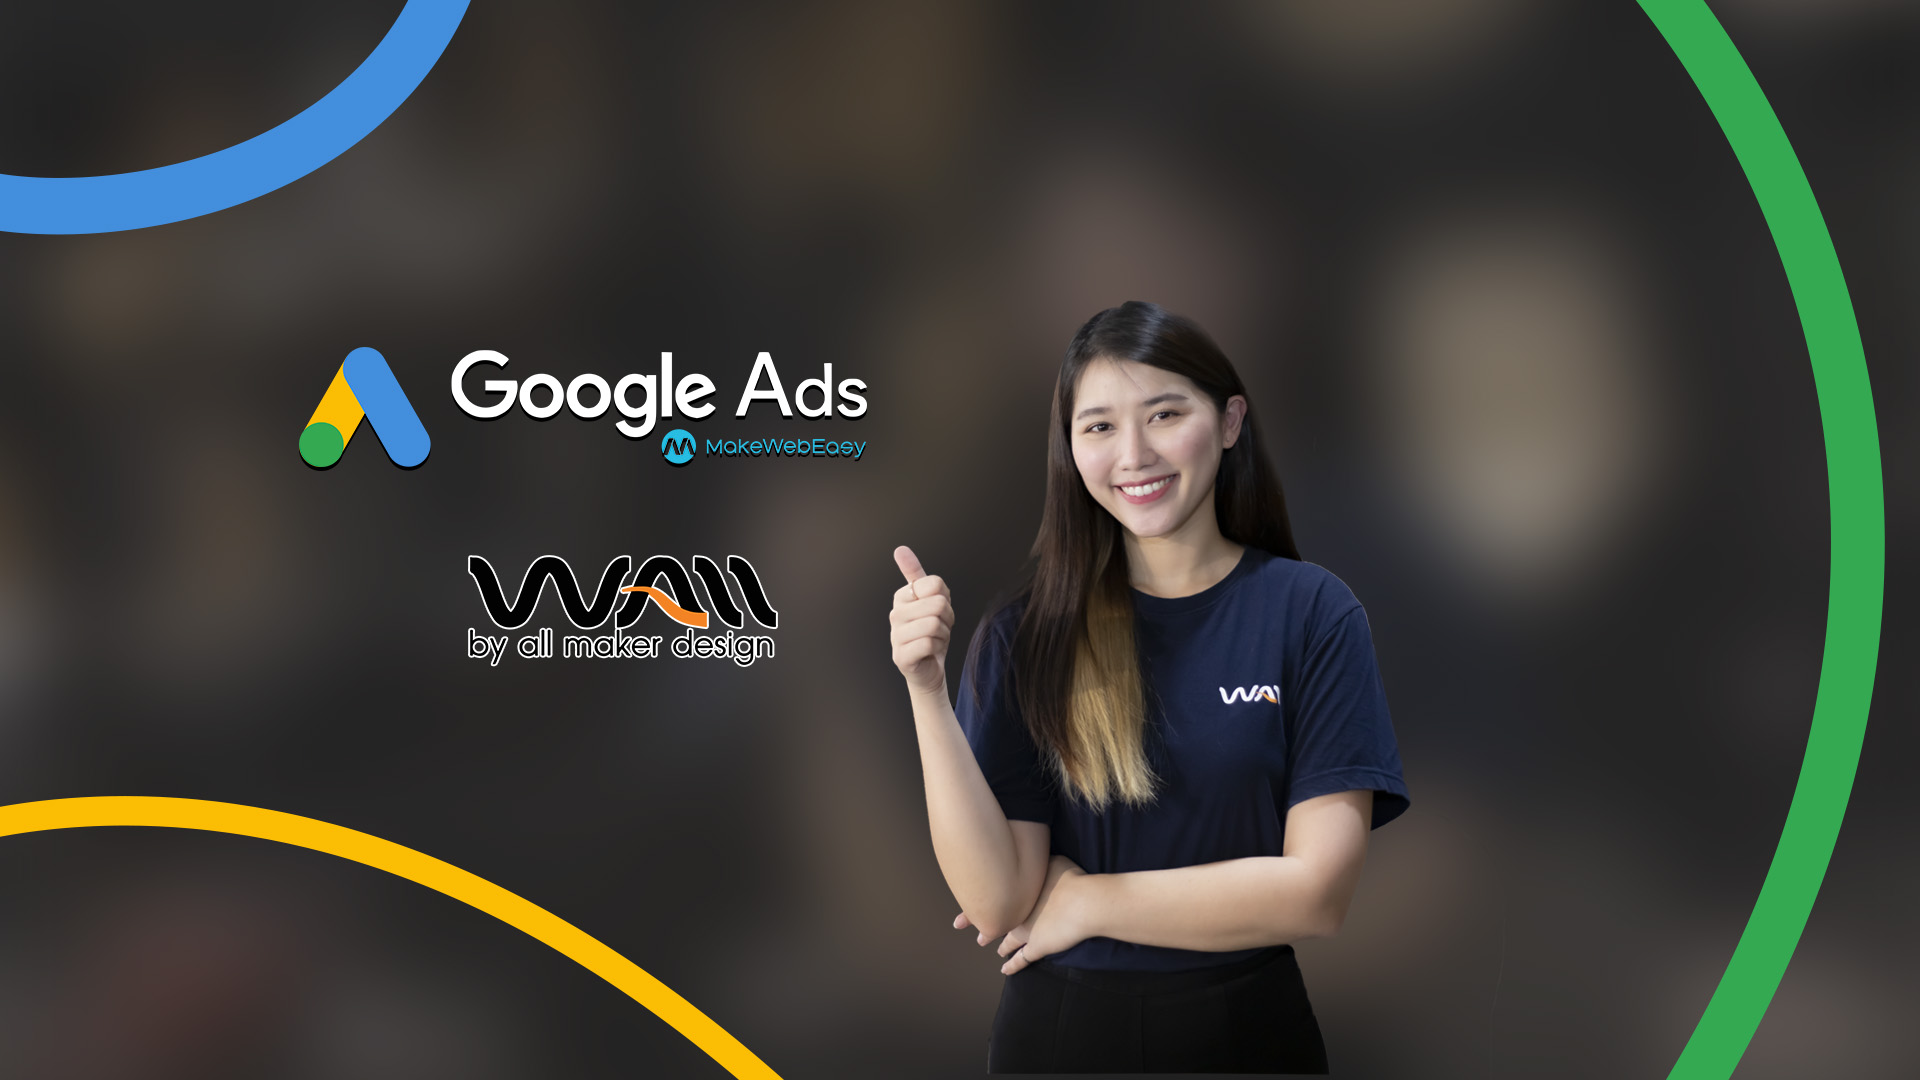 ผลลัพธ์ที่เกินคาดในการใช้บริการโฆษณา Google Ads ของ คุณเฟิร์น allmakerdesign.com ผู้ผลิตและจำหน่ายเฟอร์นิเจอร์หวายเทียม